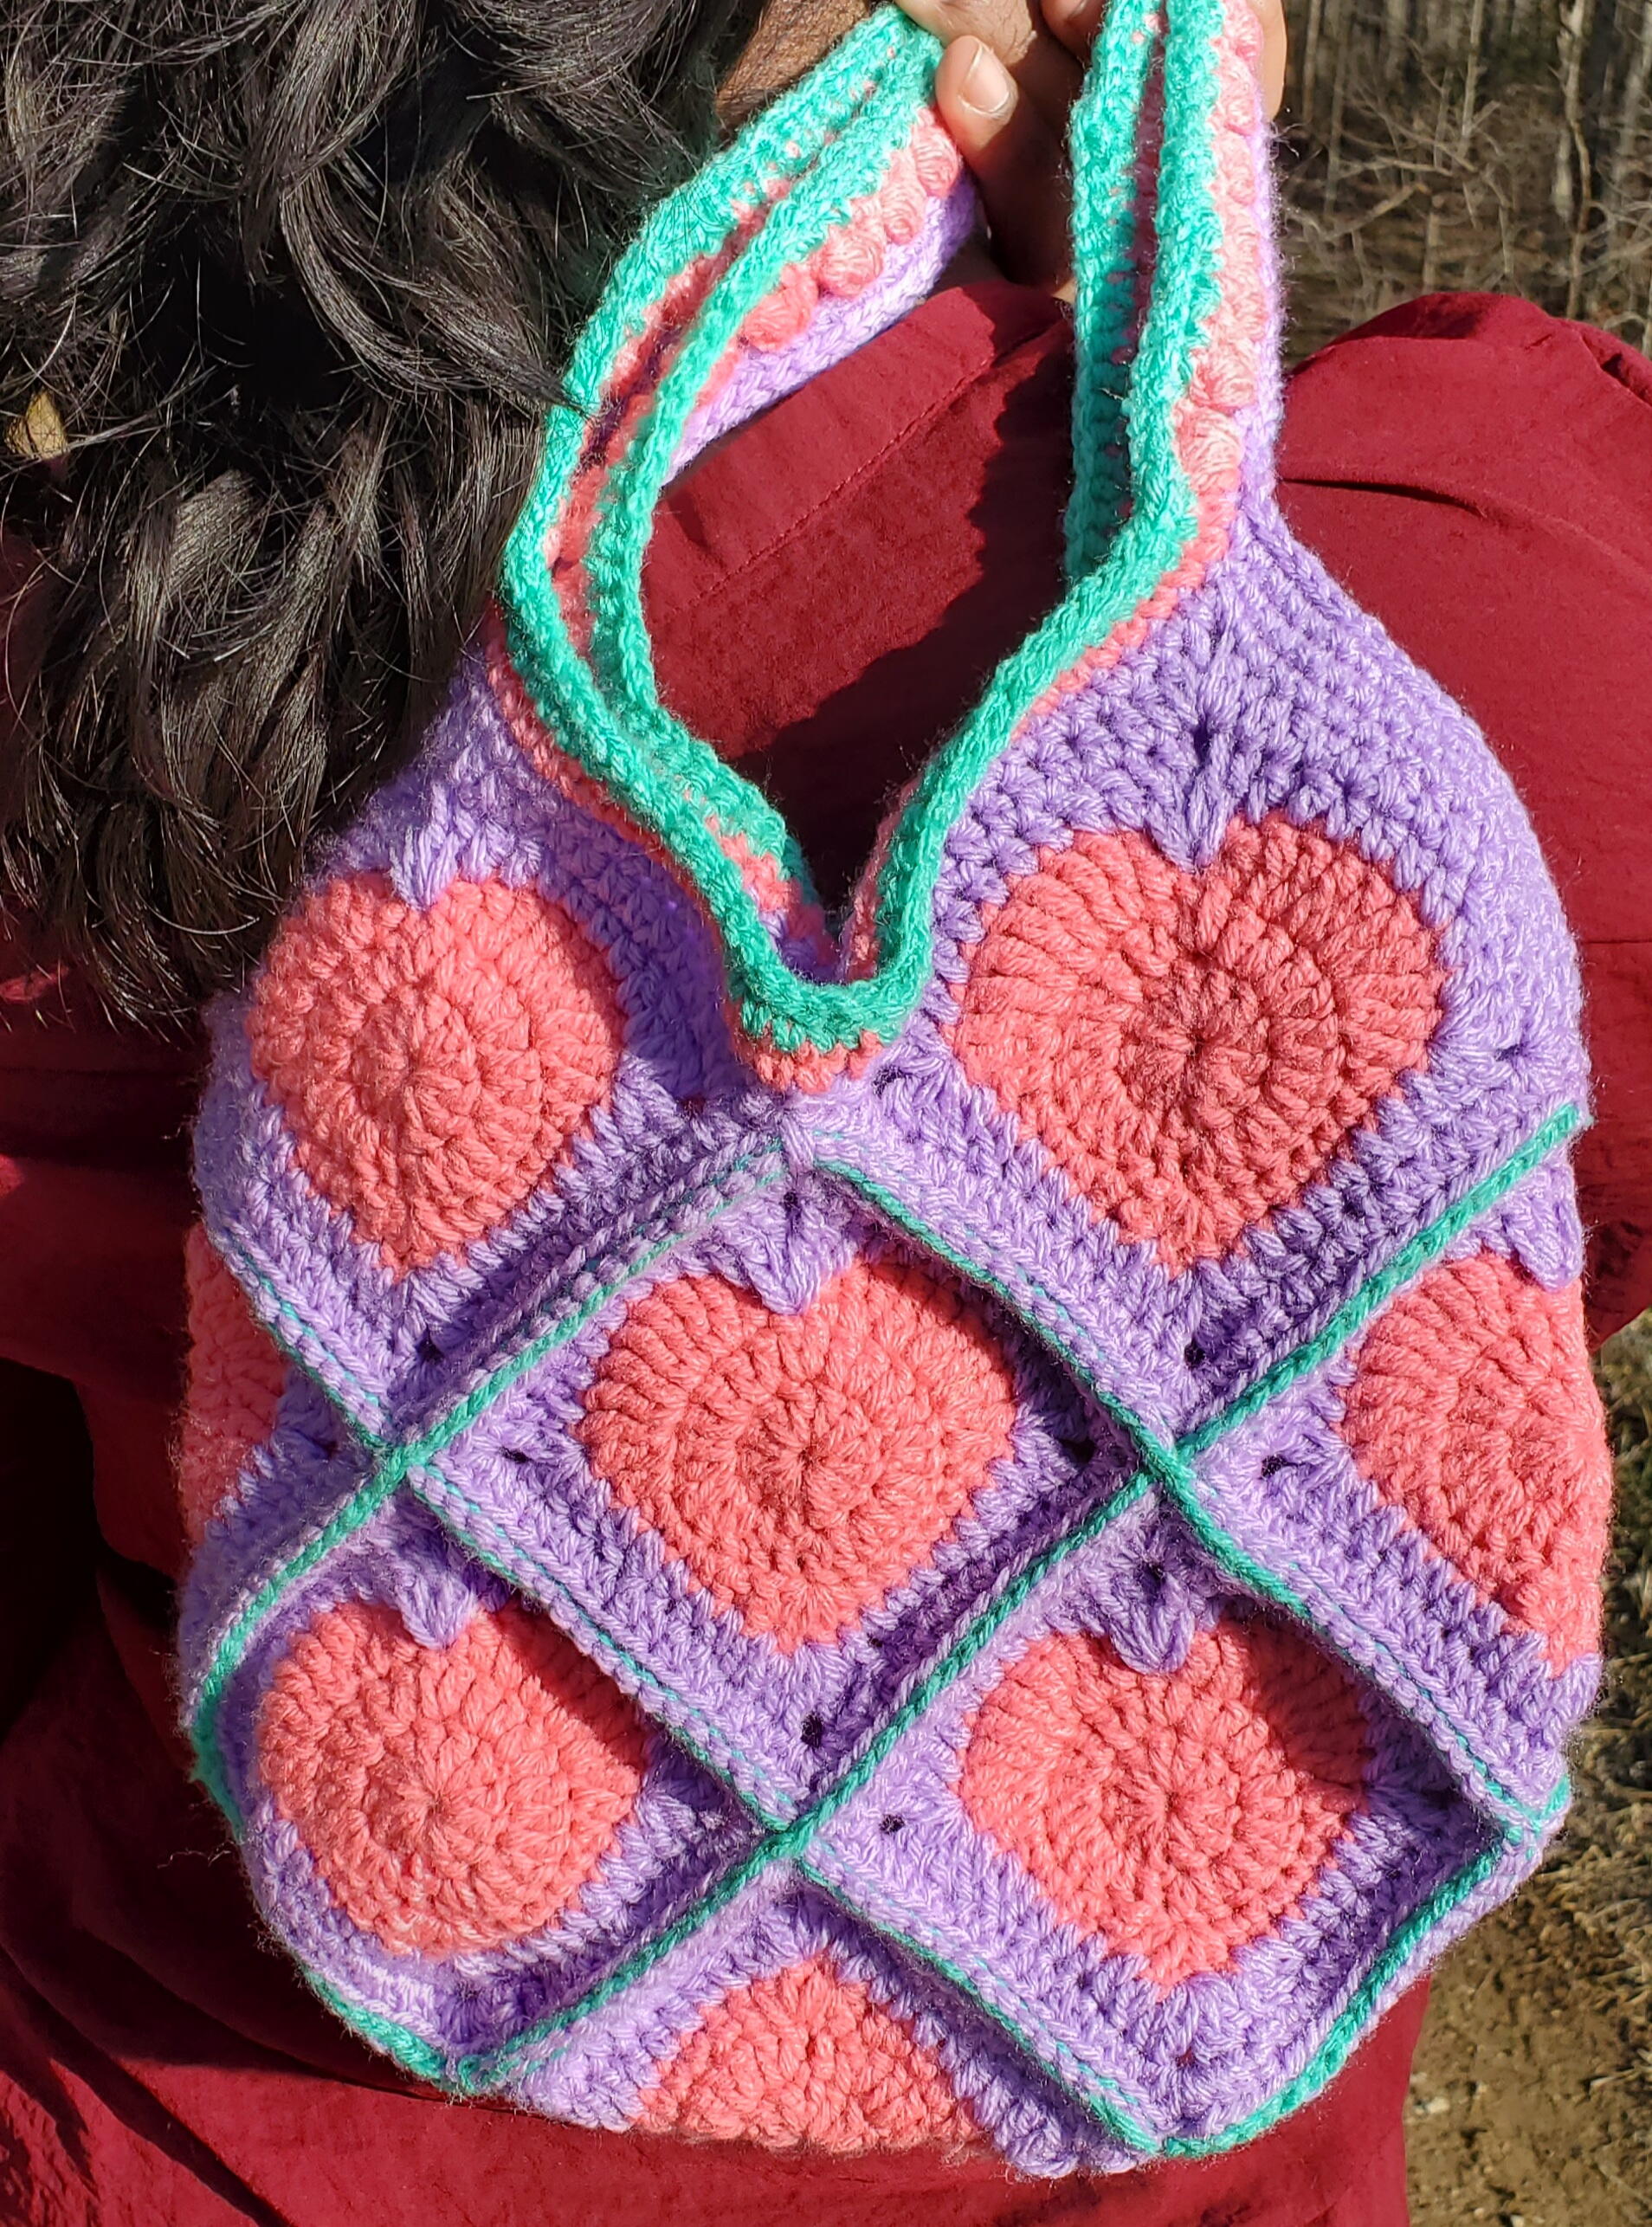 Crochet Heart Tote Bag 